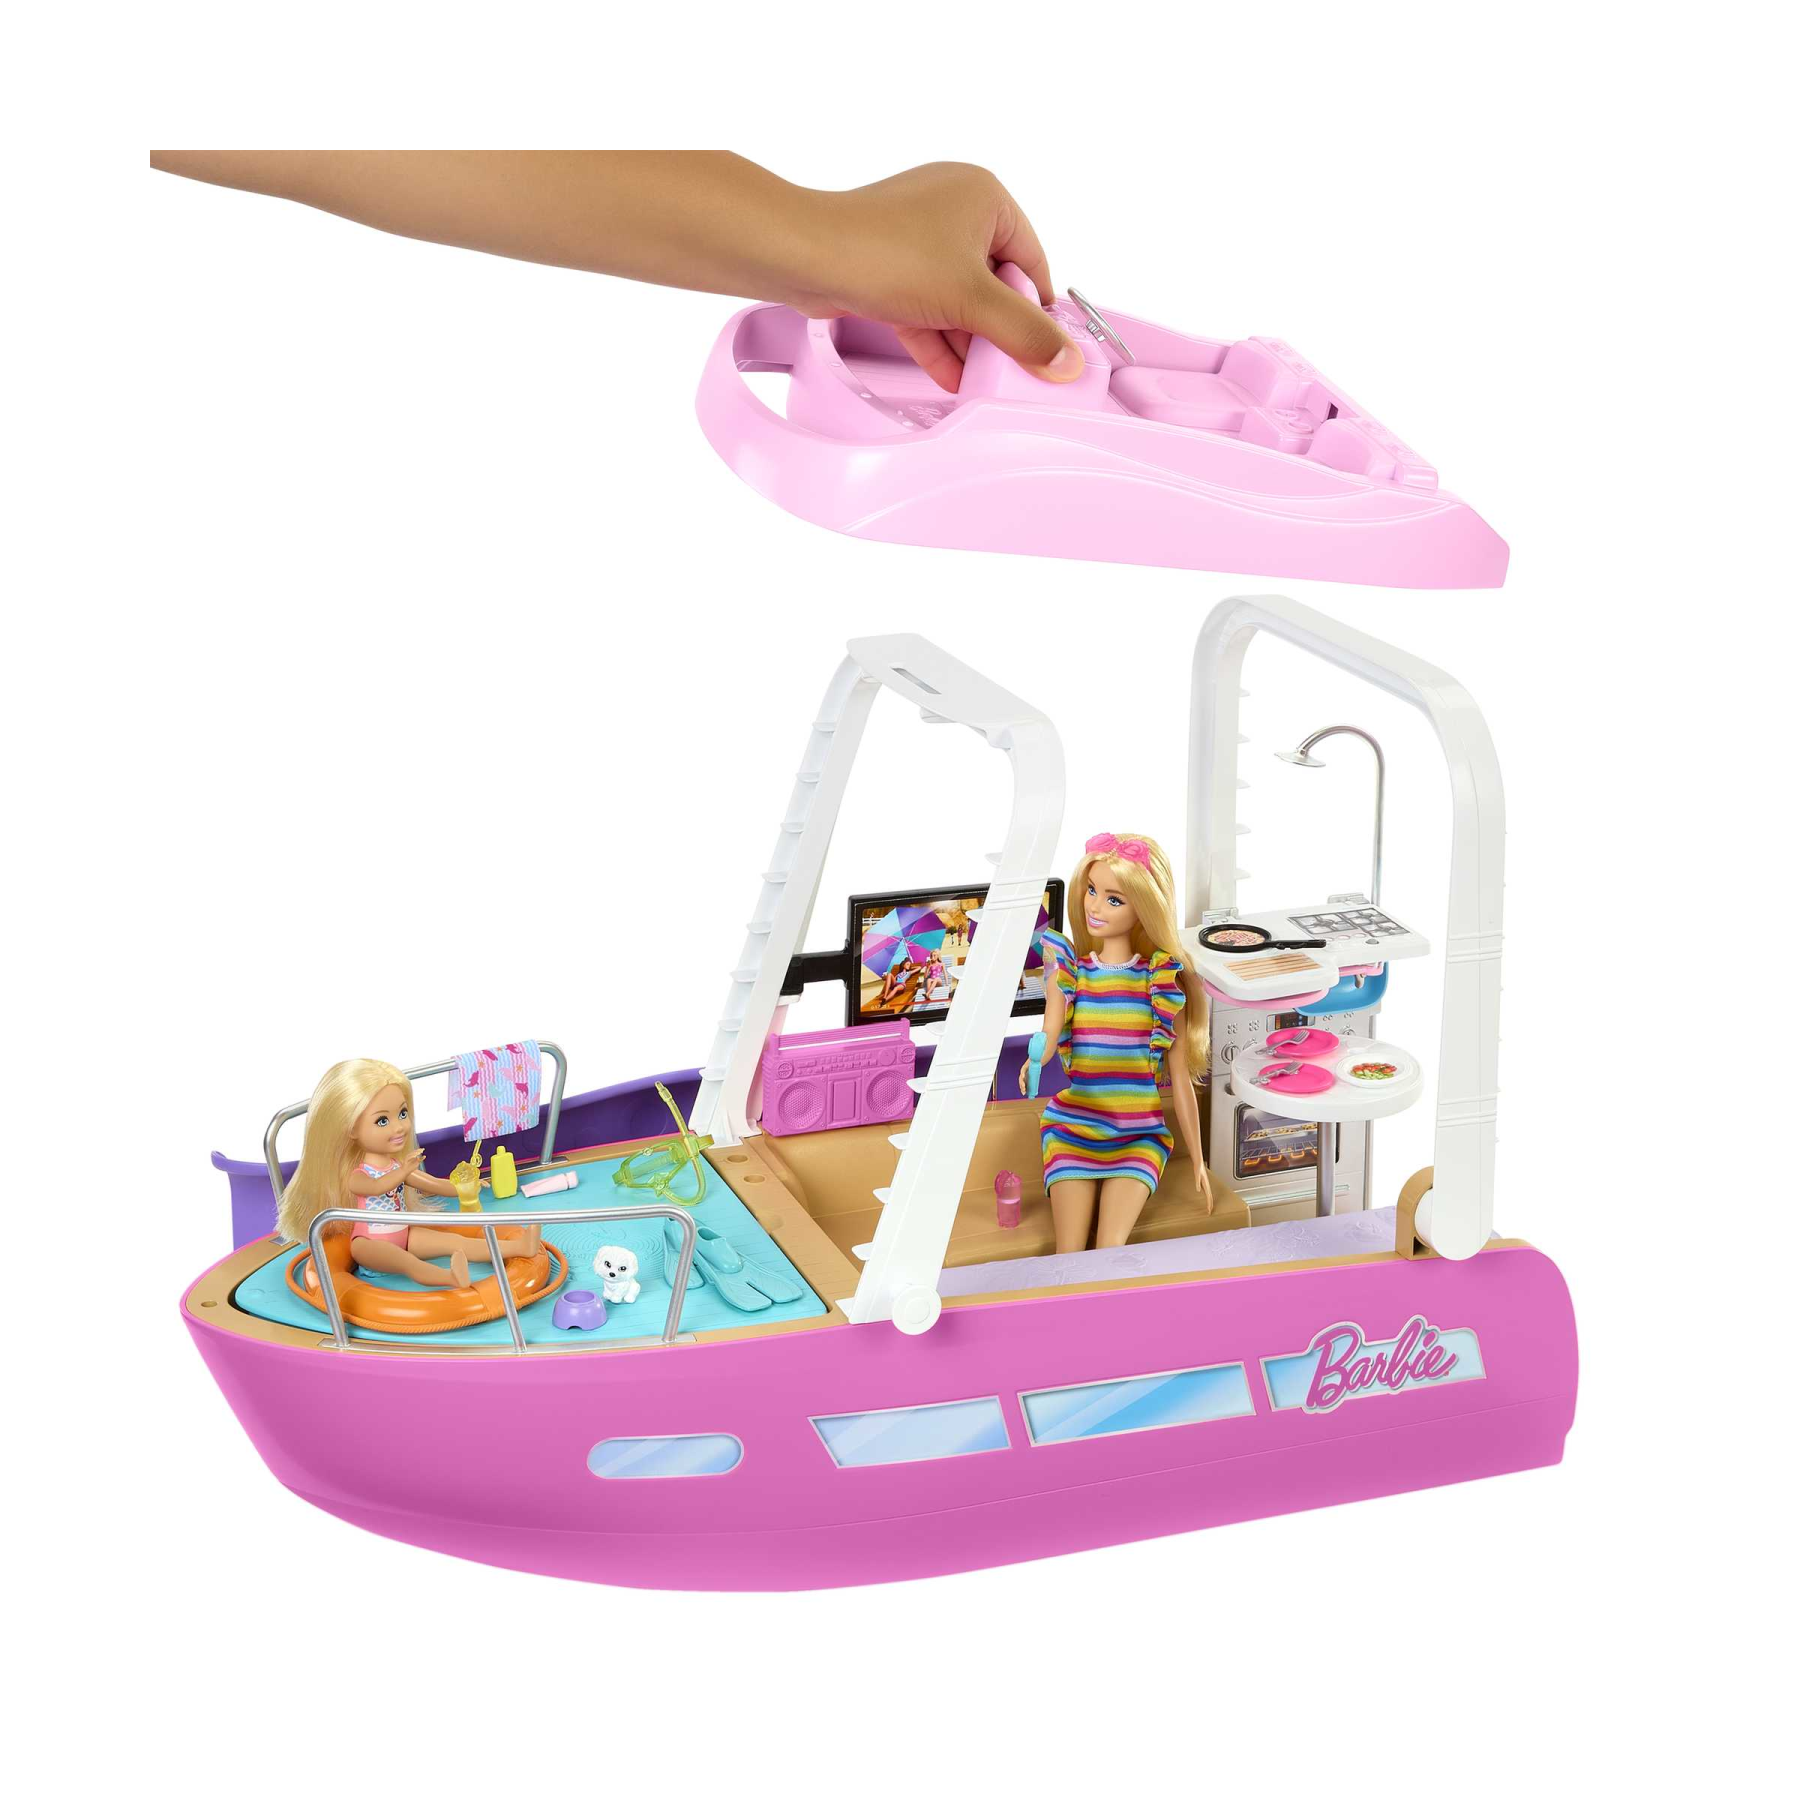 Barbie camper dei sogni playset con veicolo con ruote funzionanti, 7 aree  gioco, piscina, scivolo e +60 accessori, giocattolo per bambini 3+ anni -  Toys Center